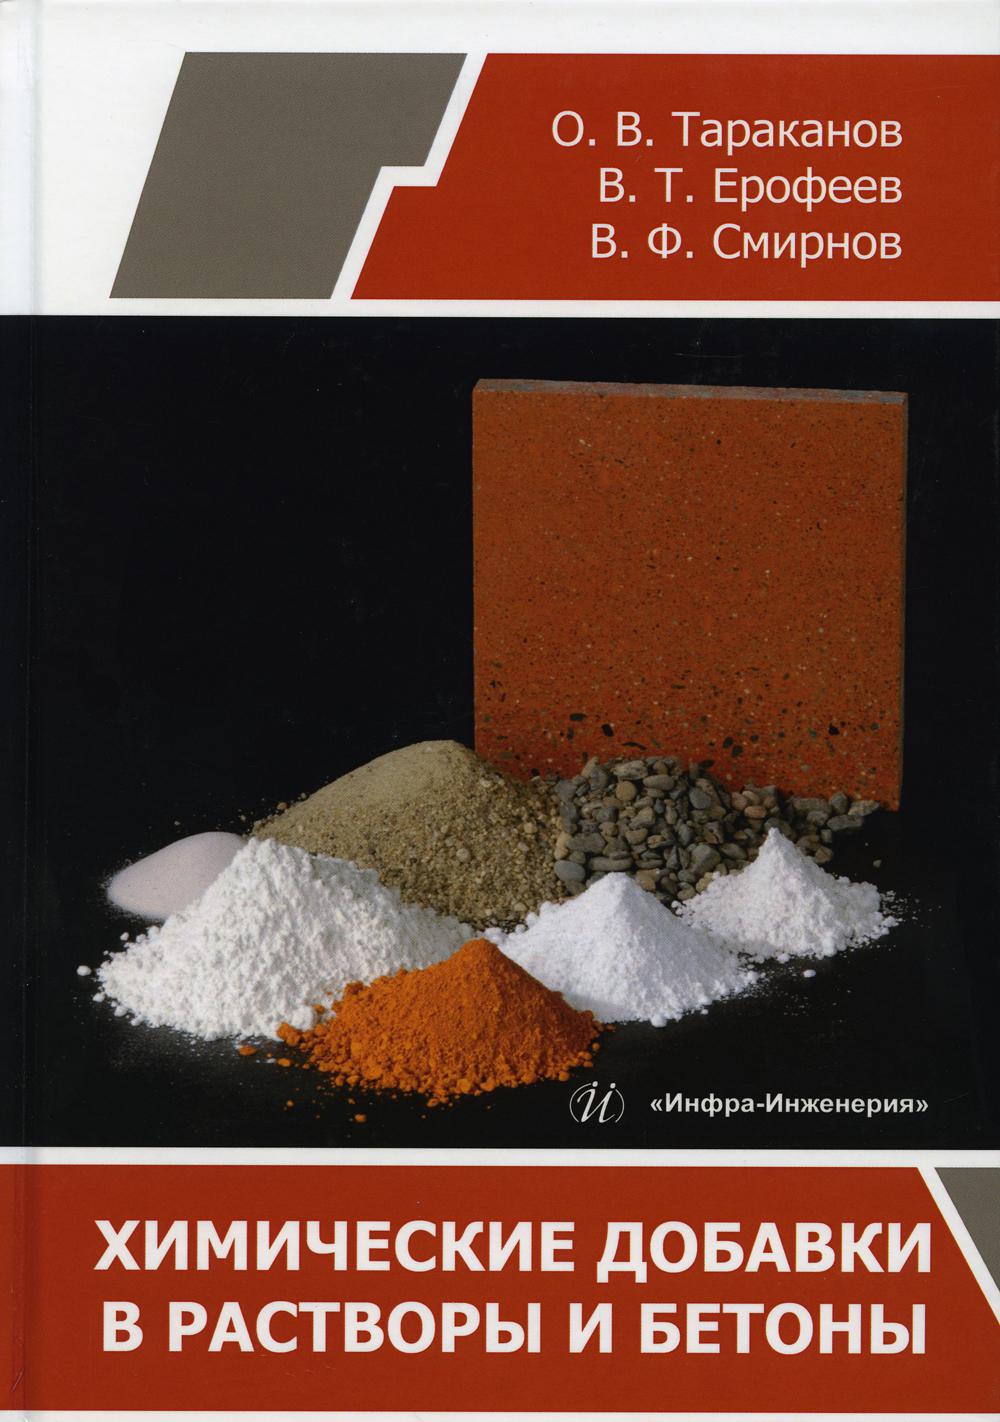 Химические добавки в растворы и бетоны: многорафия